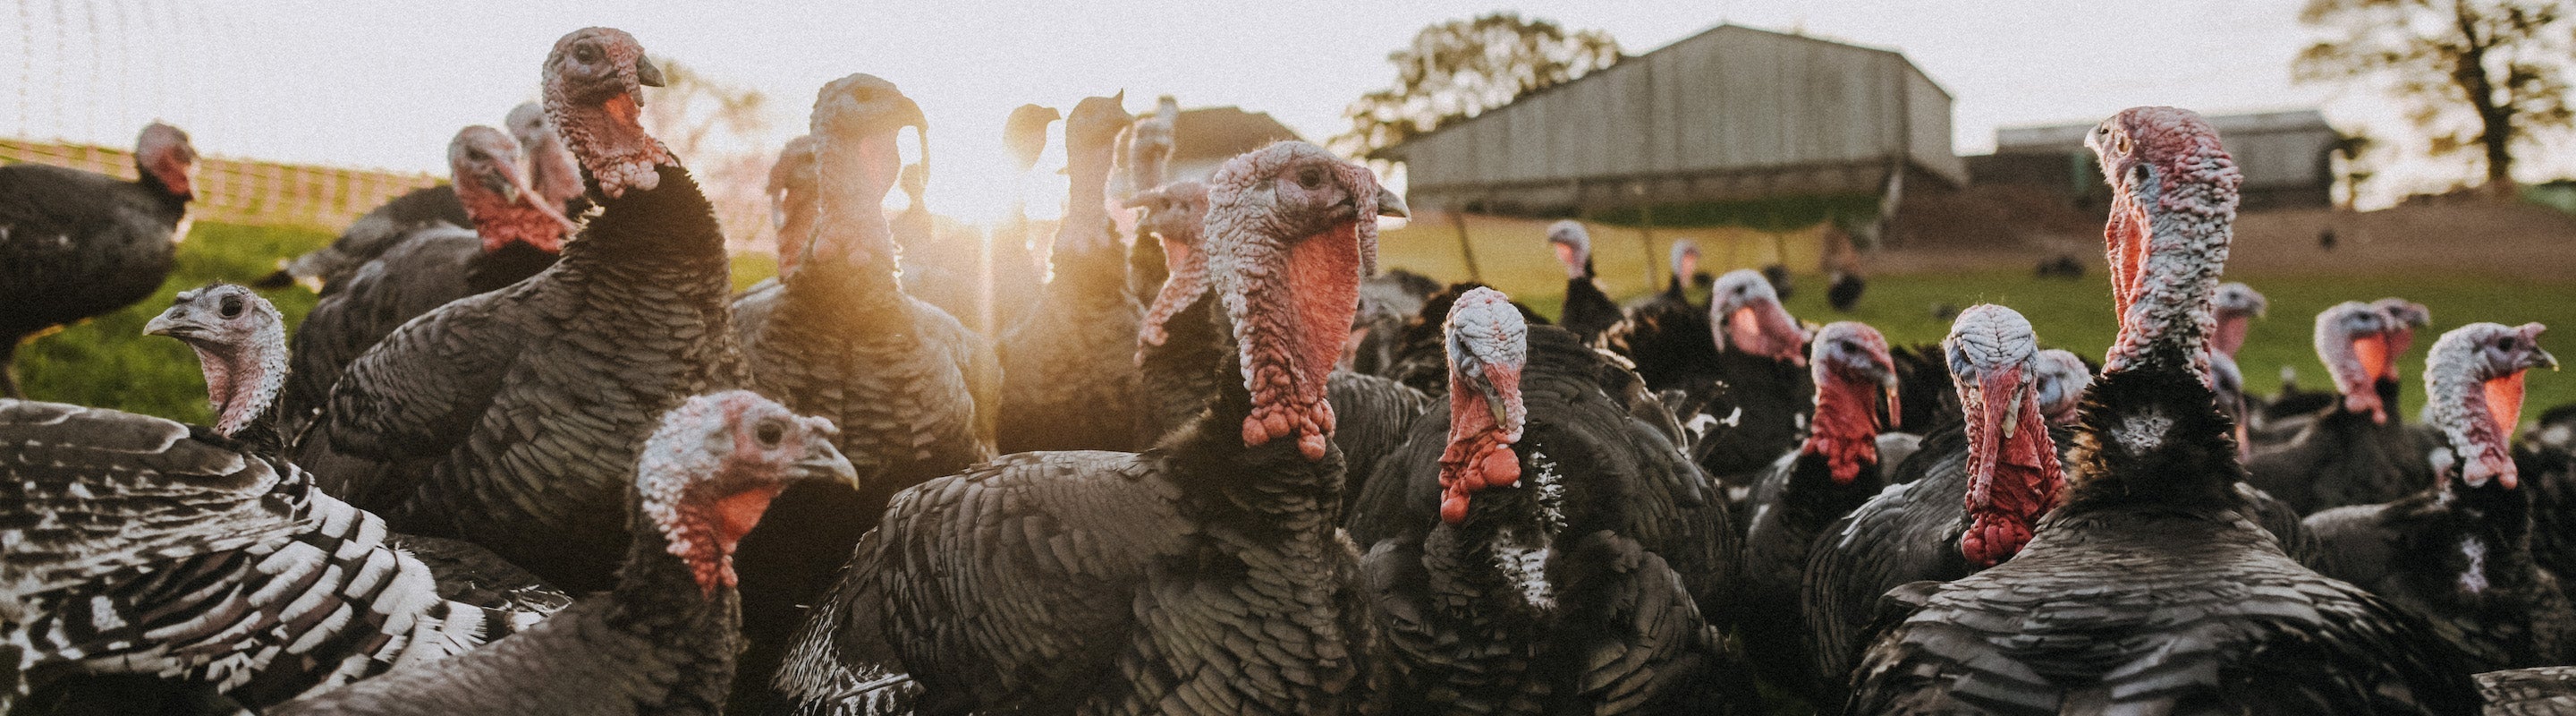 Free Range Bronze Turkey Wings – Pipers Farm